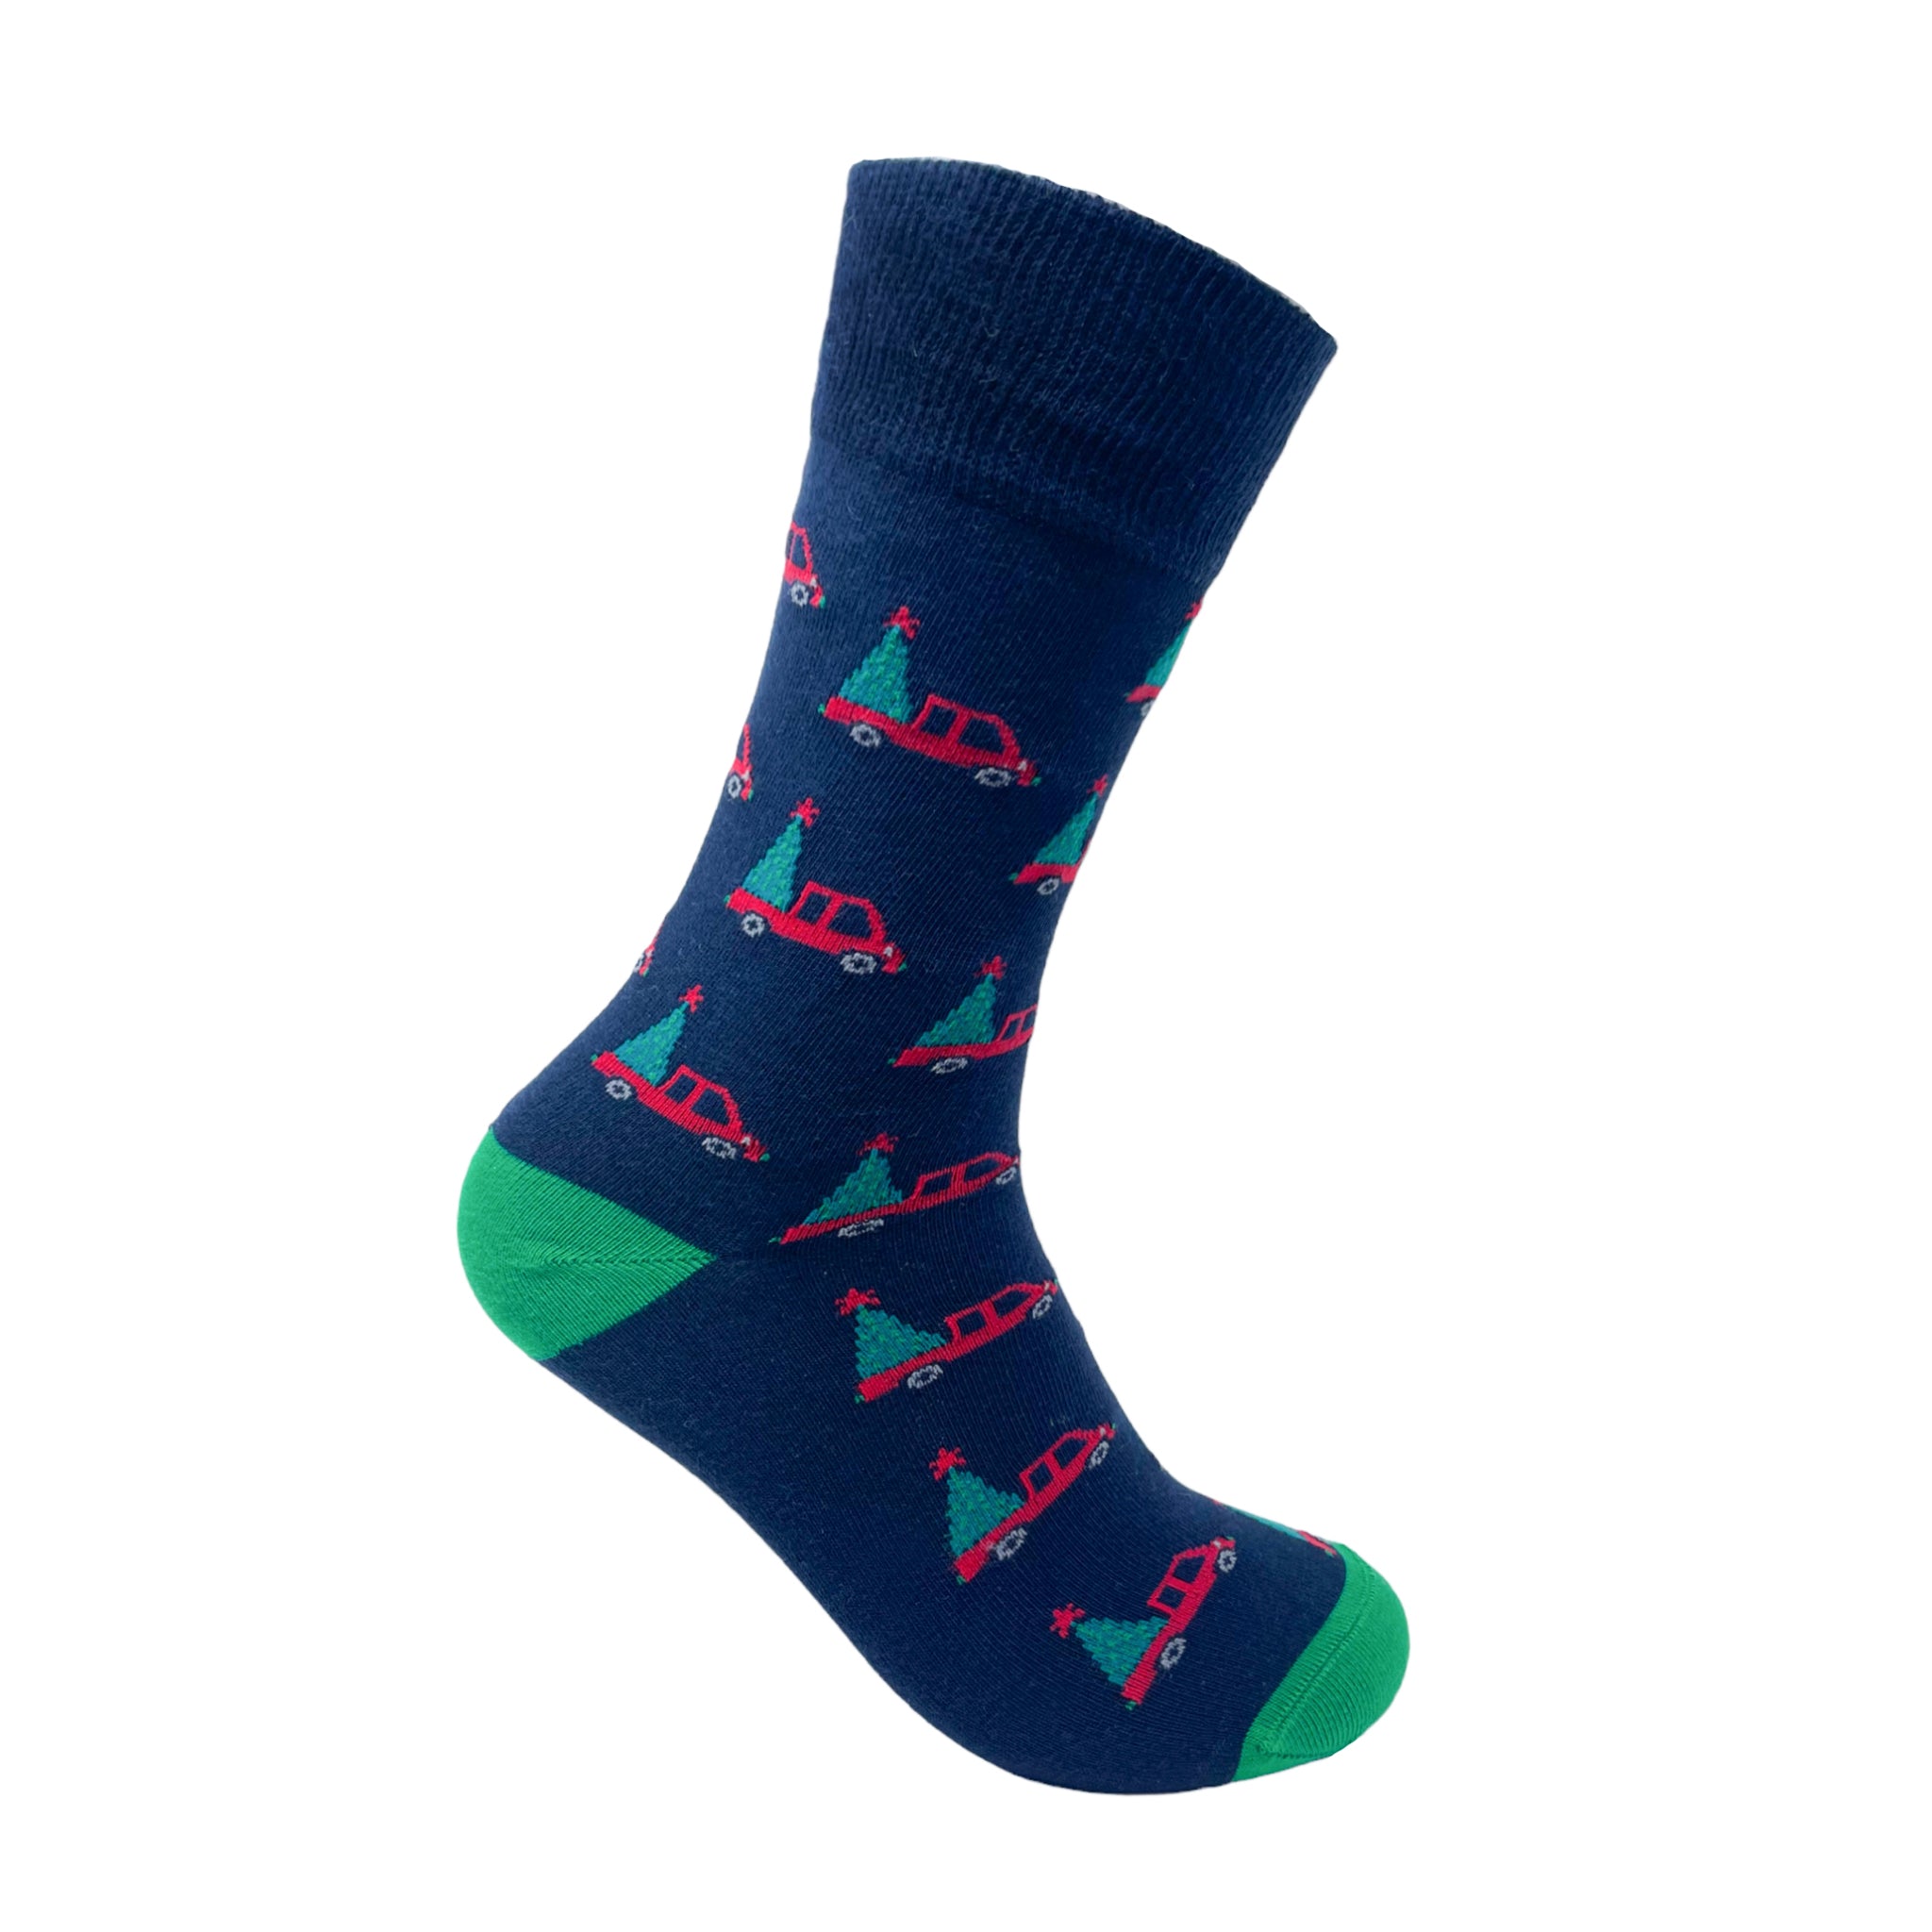 Cruisin' Christmas Socks For Men